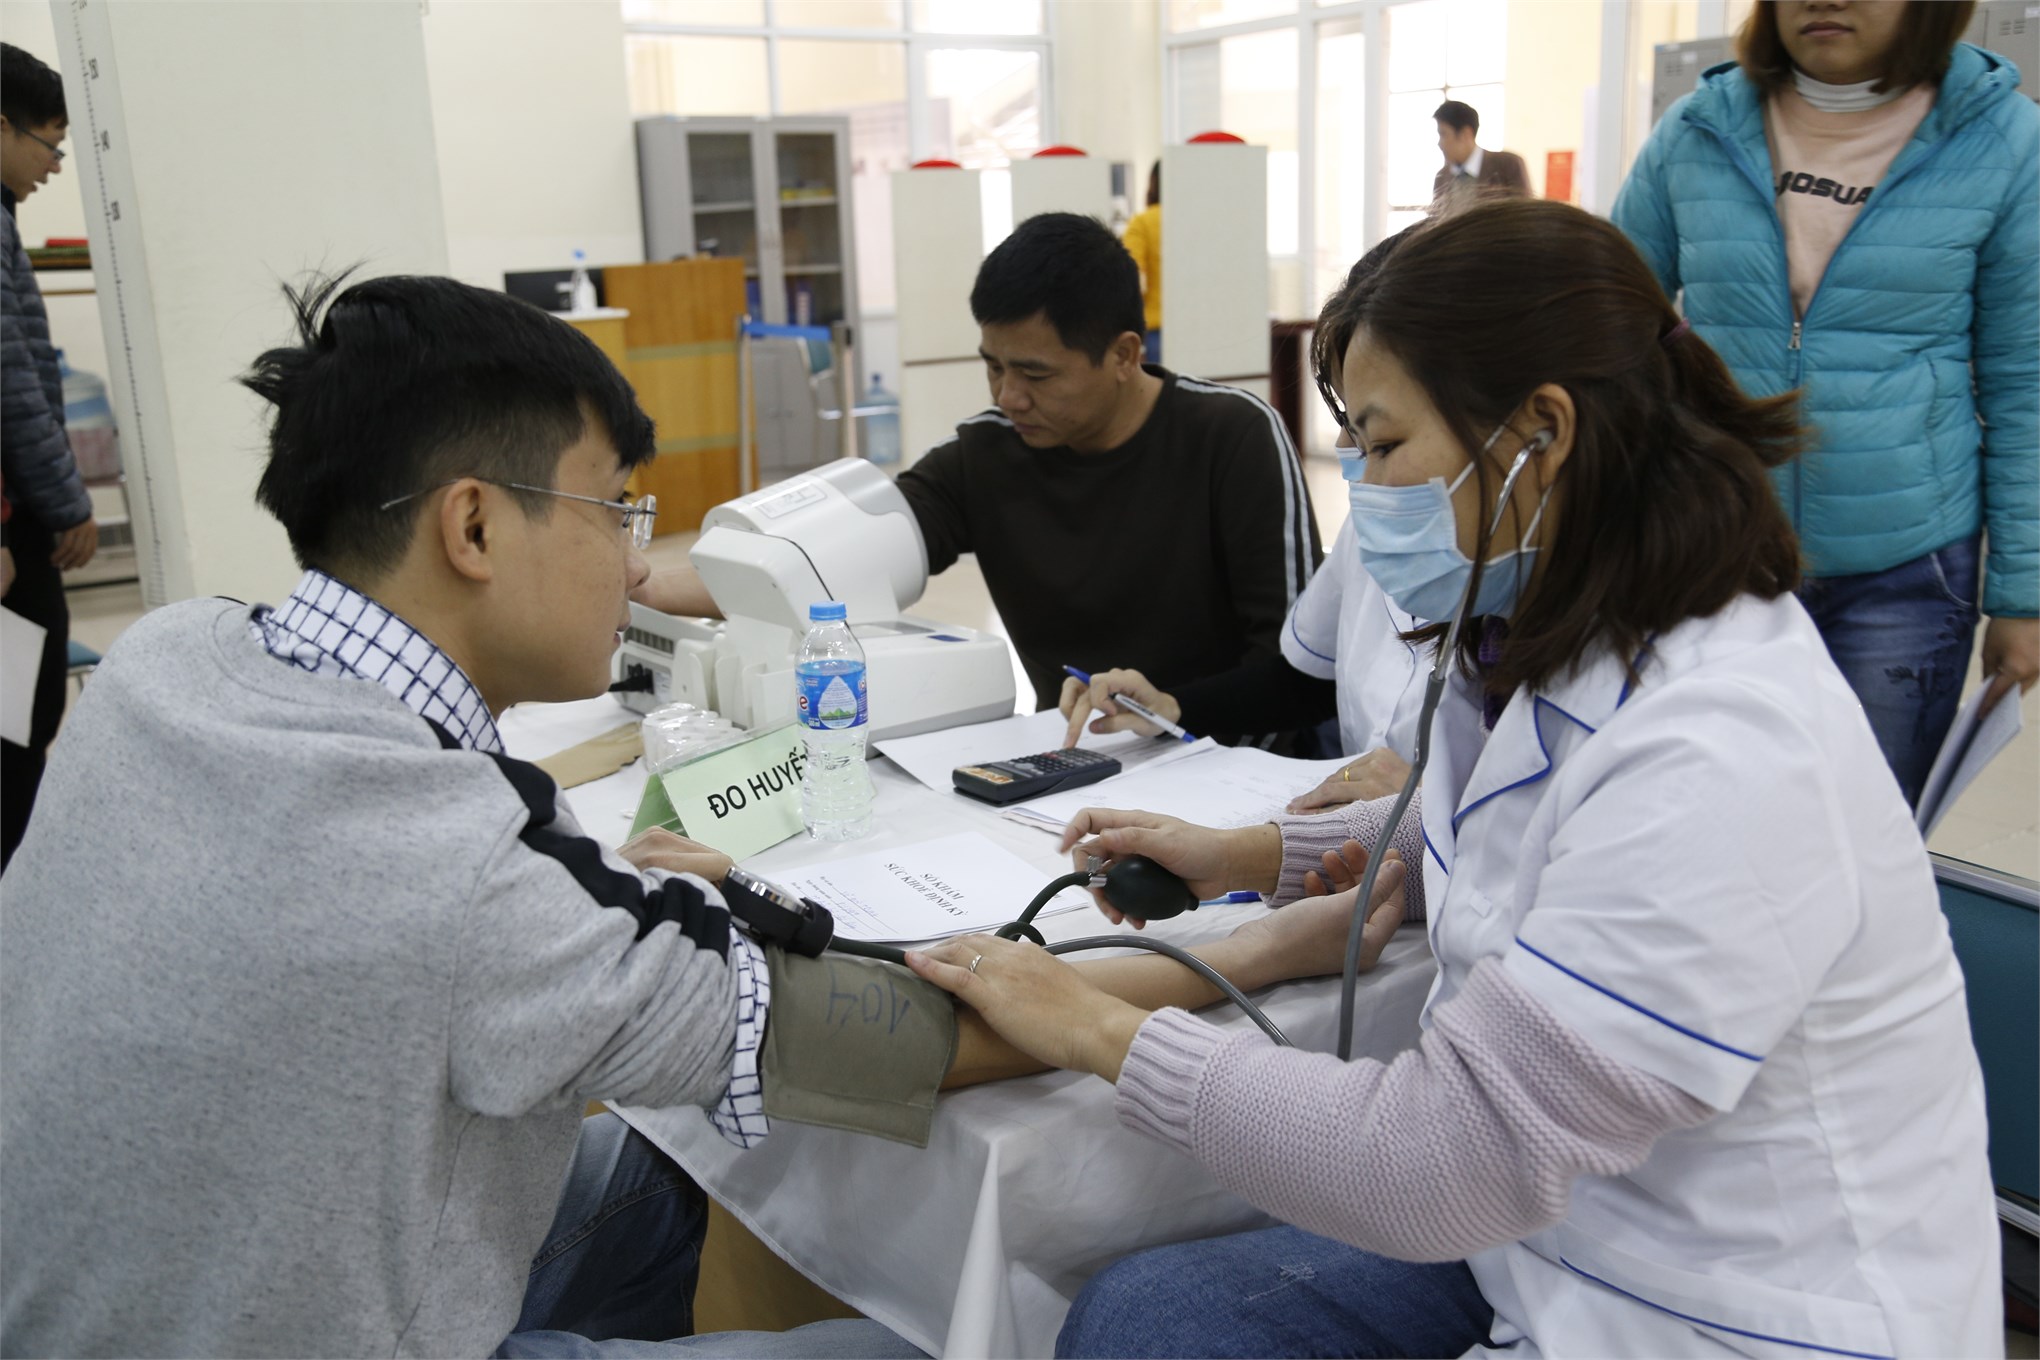 Đại học Công nghiệp Hà Nội tổ chức khám sức khỏe định kỳ năm 2020